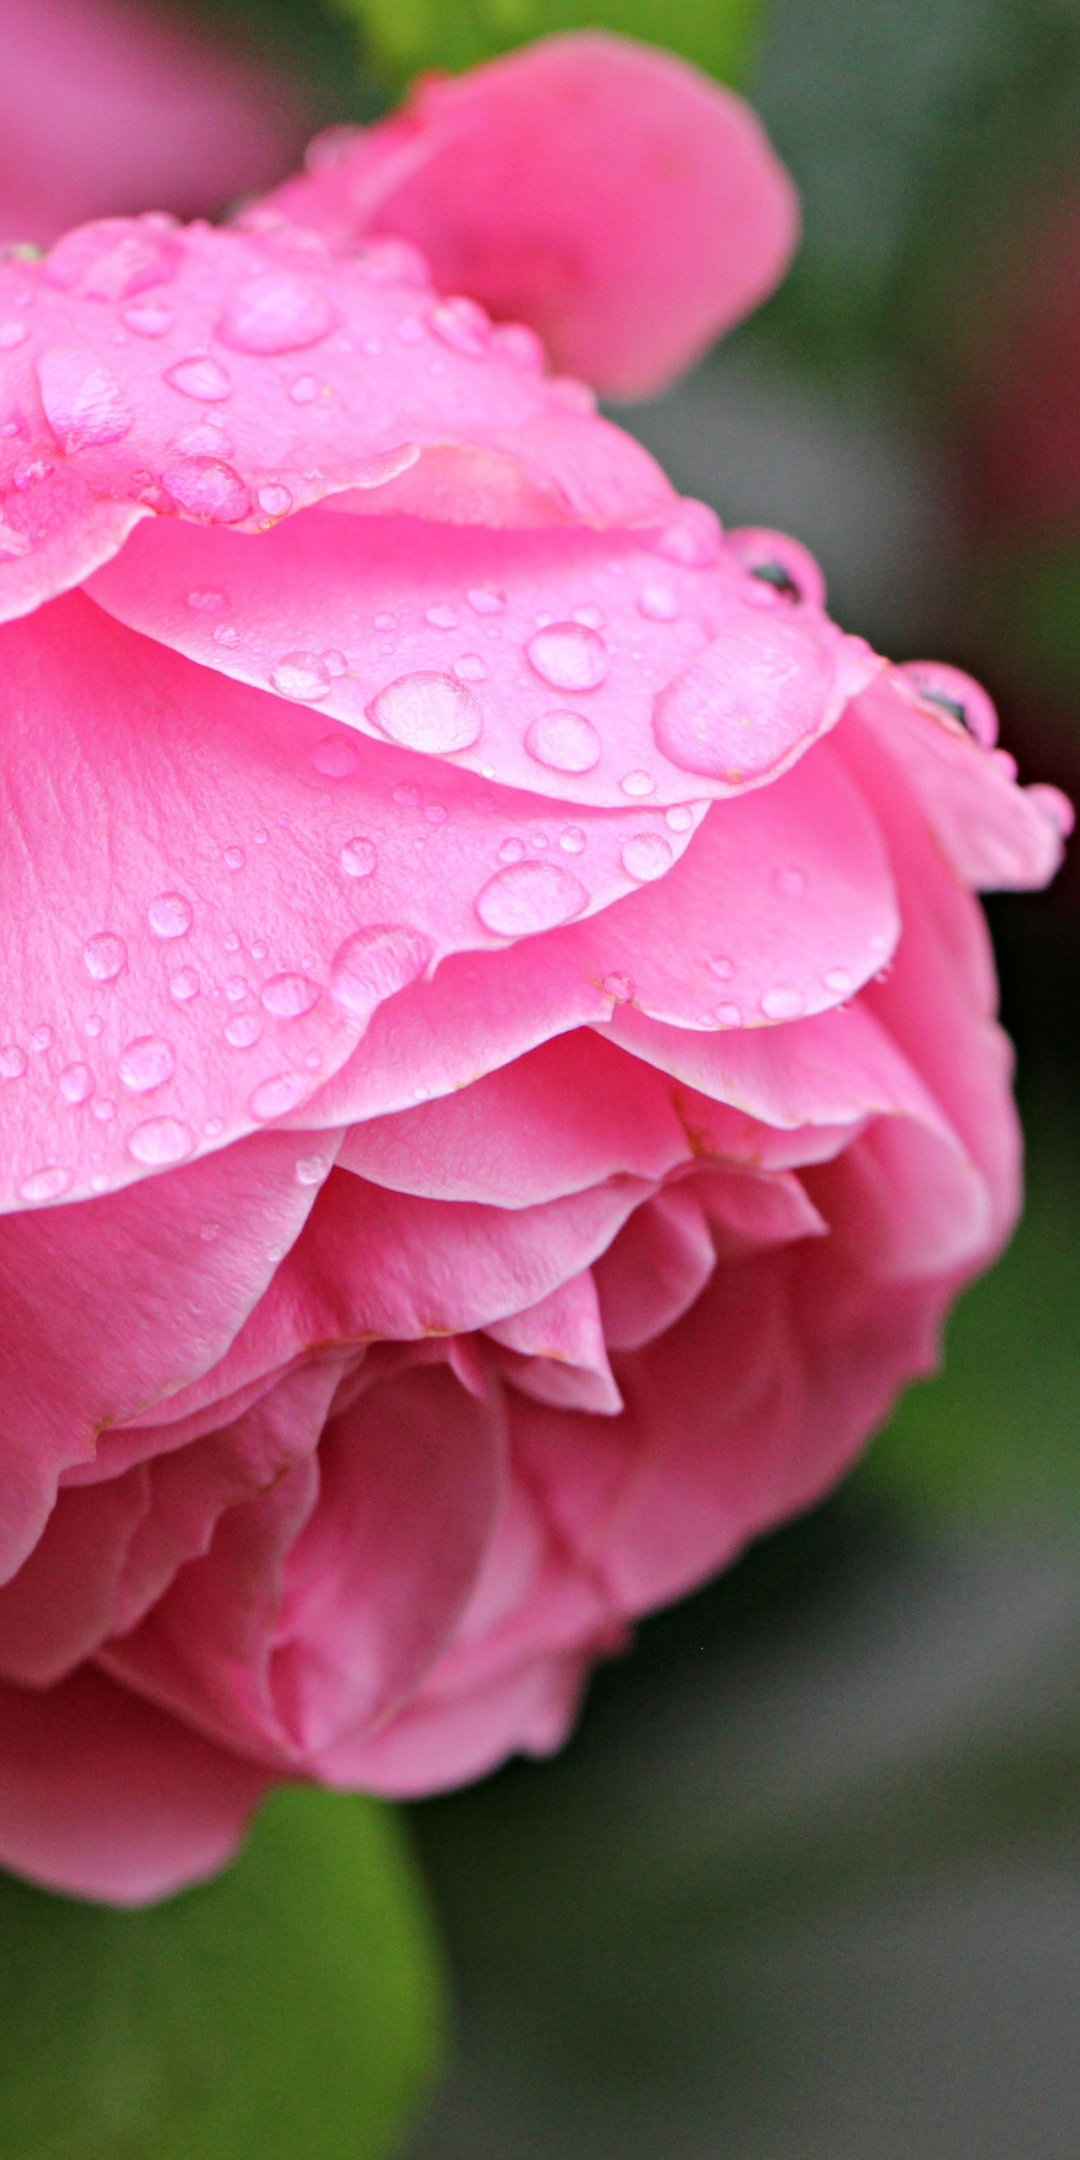 Rose, bloom, drops, close up, 1080x2160 wallpaper